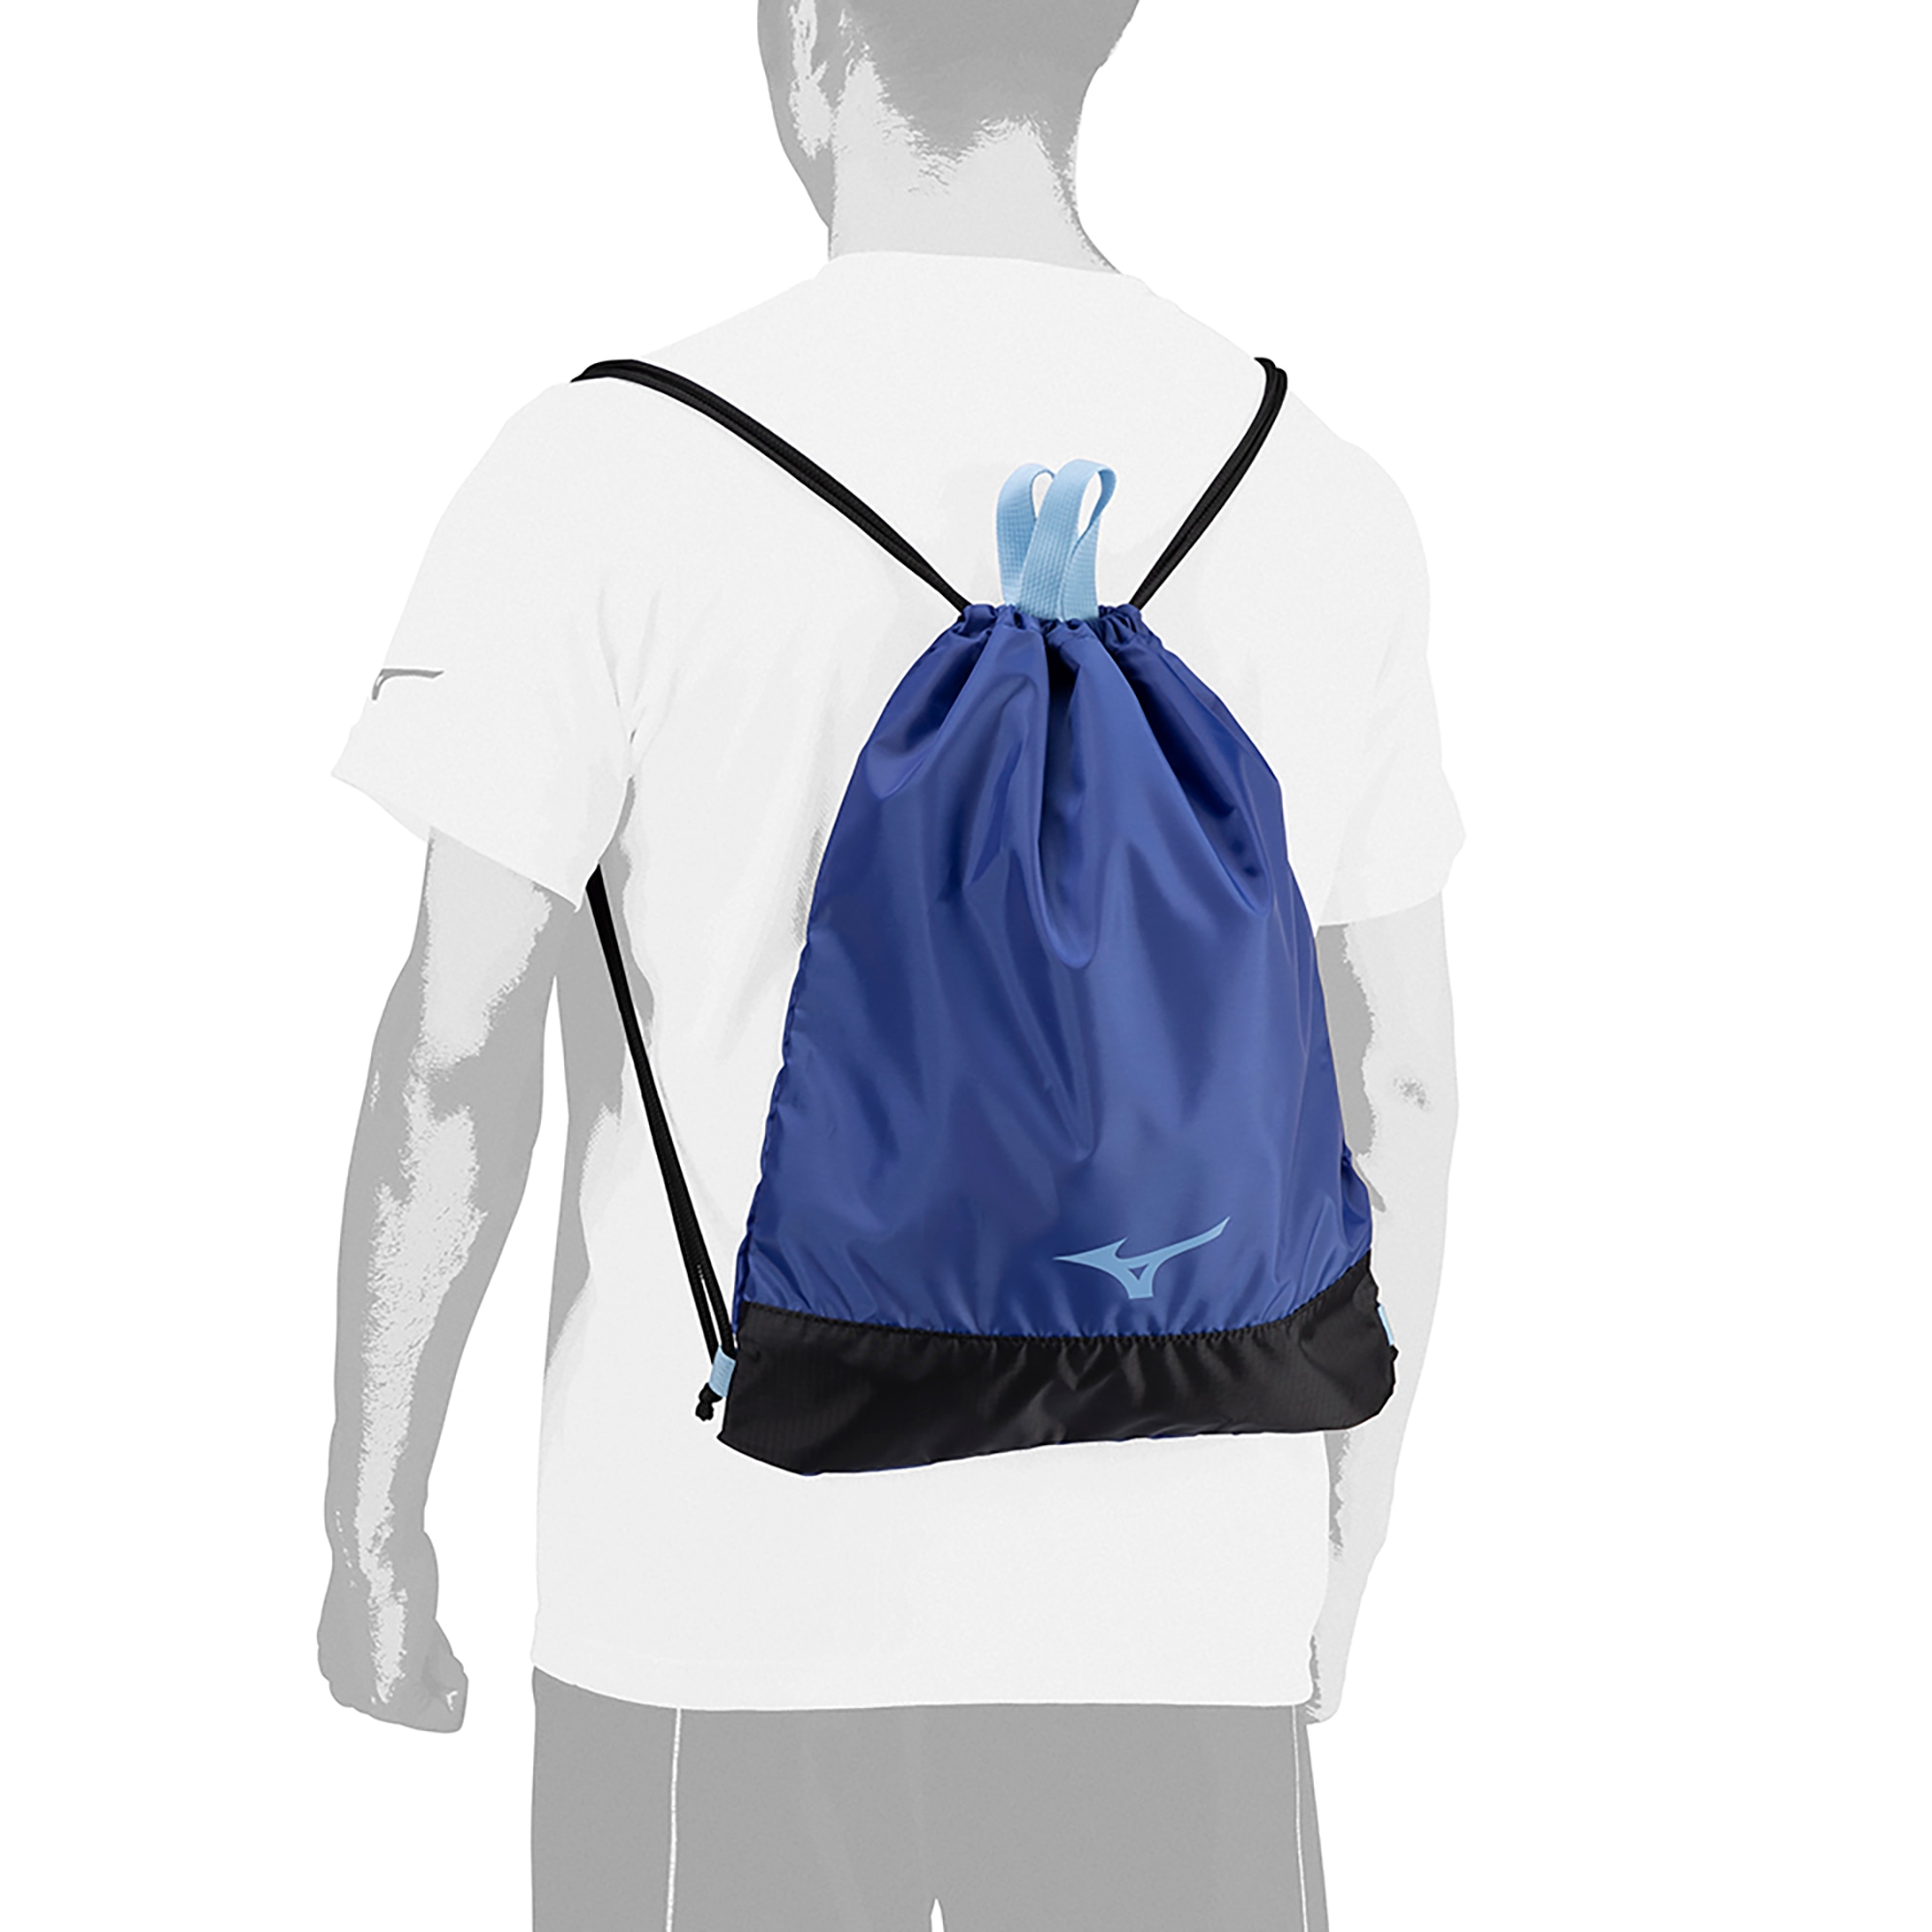 ミズノ公式 ネックポーチ ネイビー×ピンク - スポーツバッグ